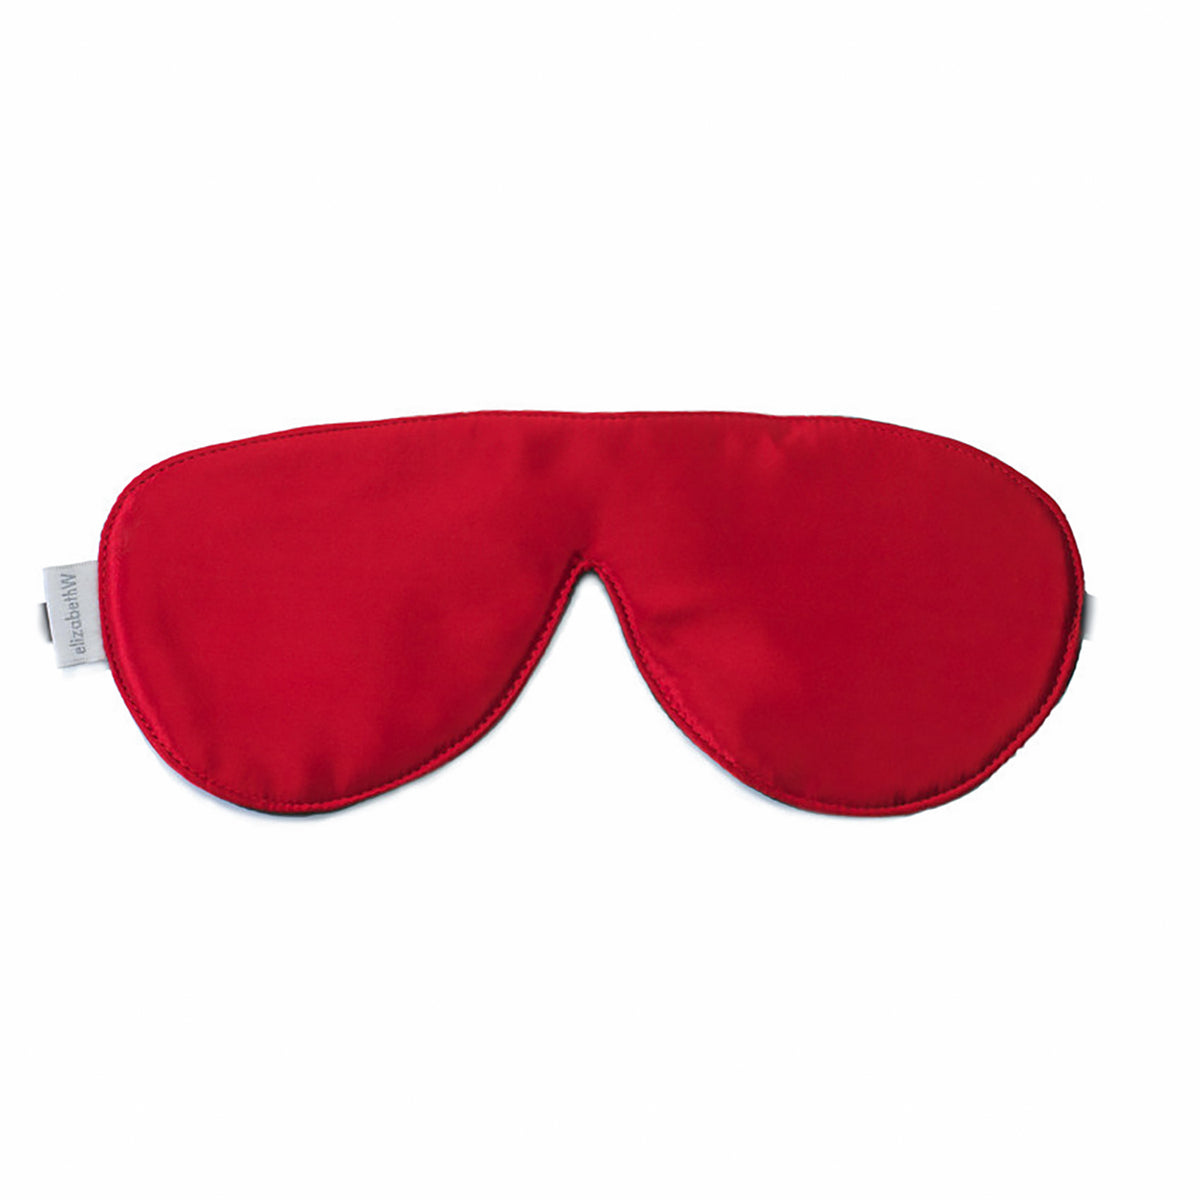 Red Sleep Mask